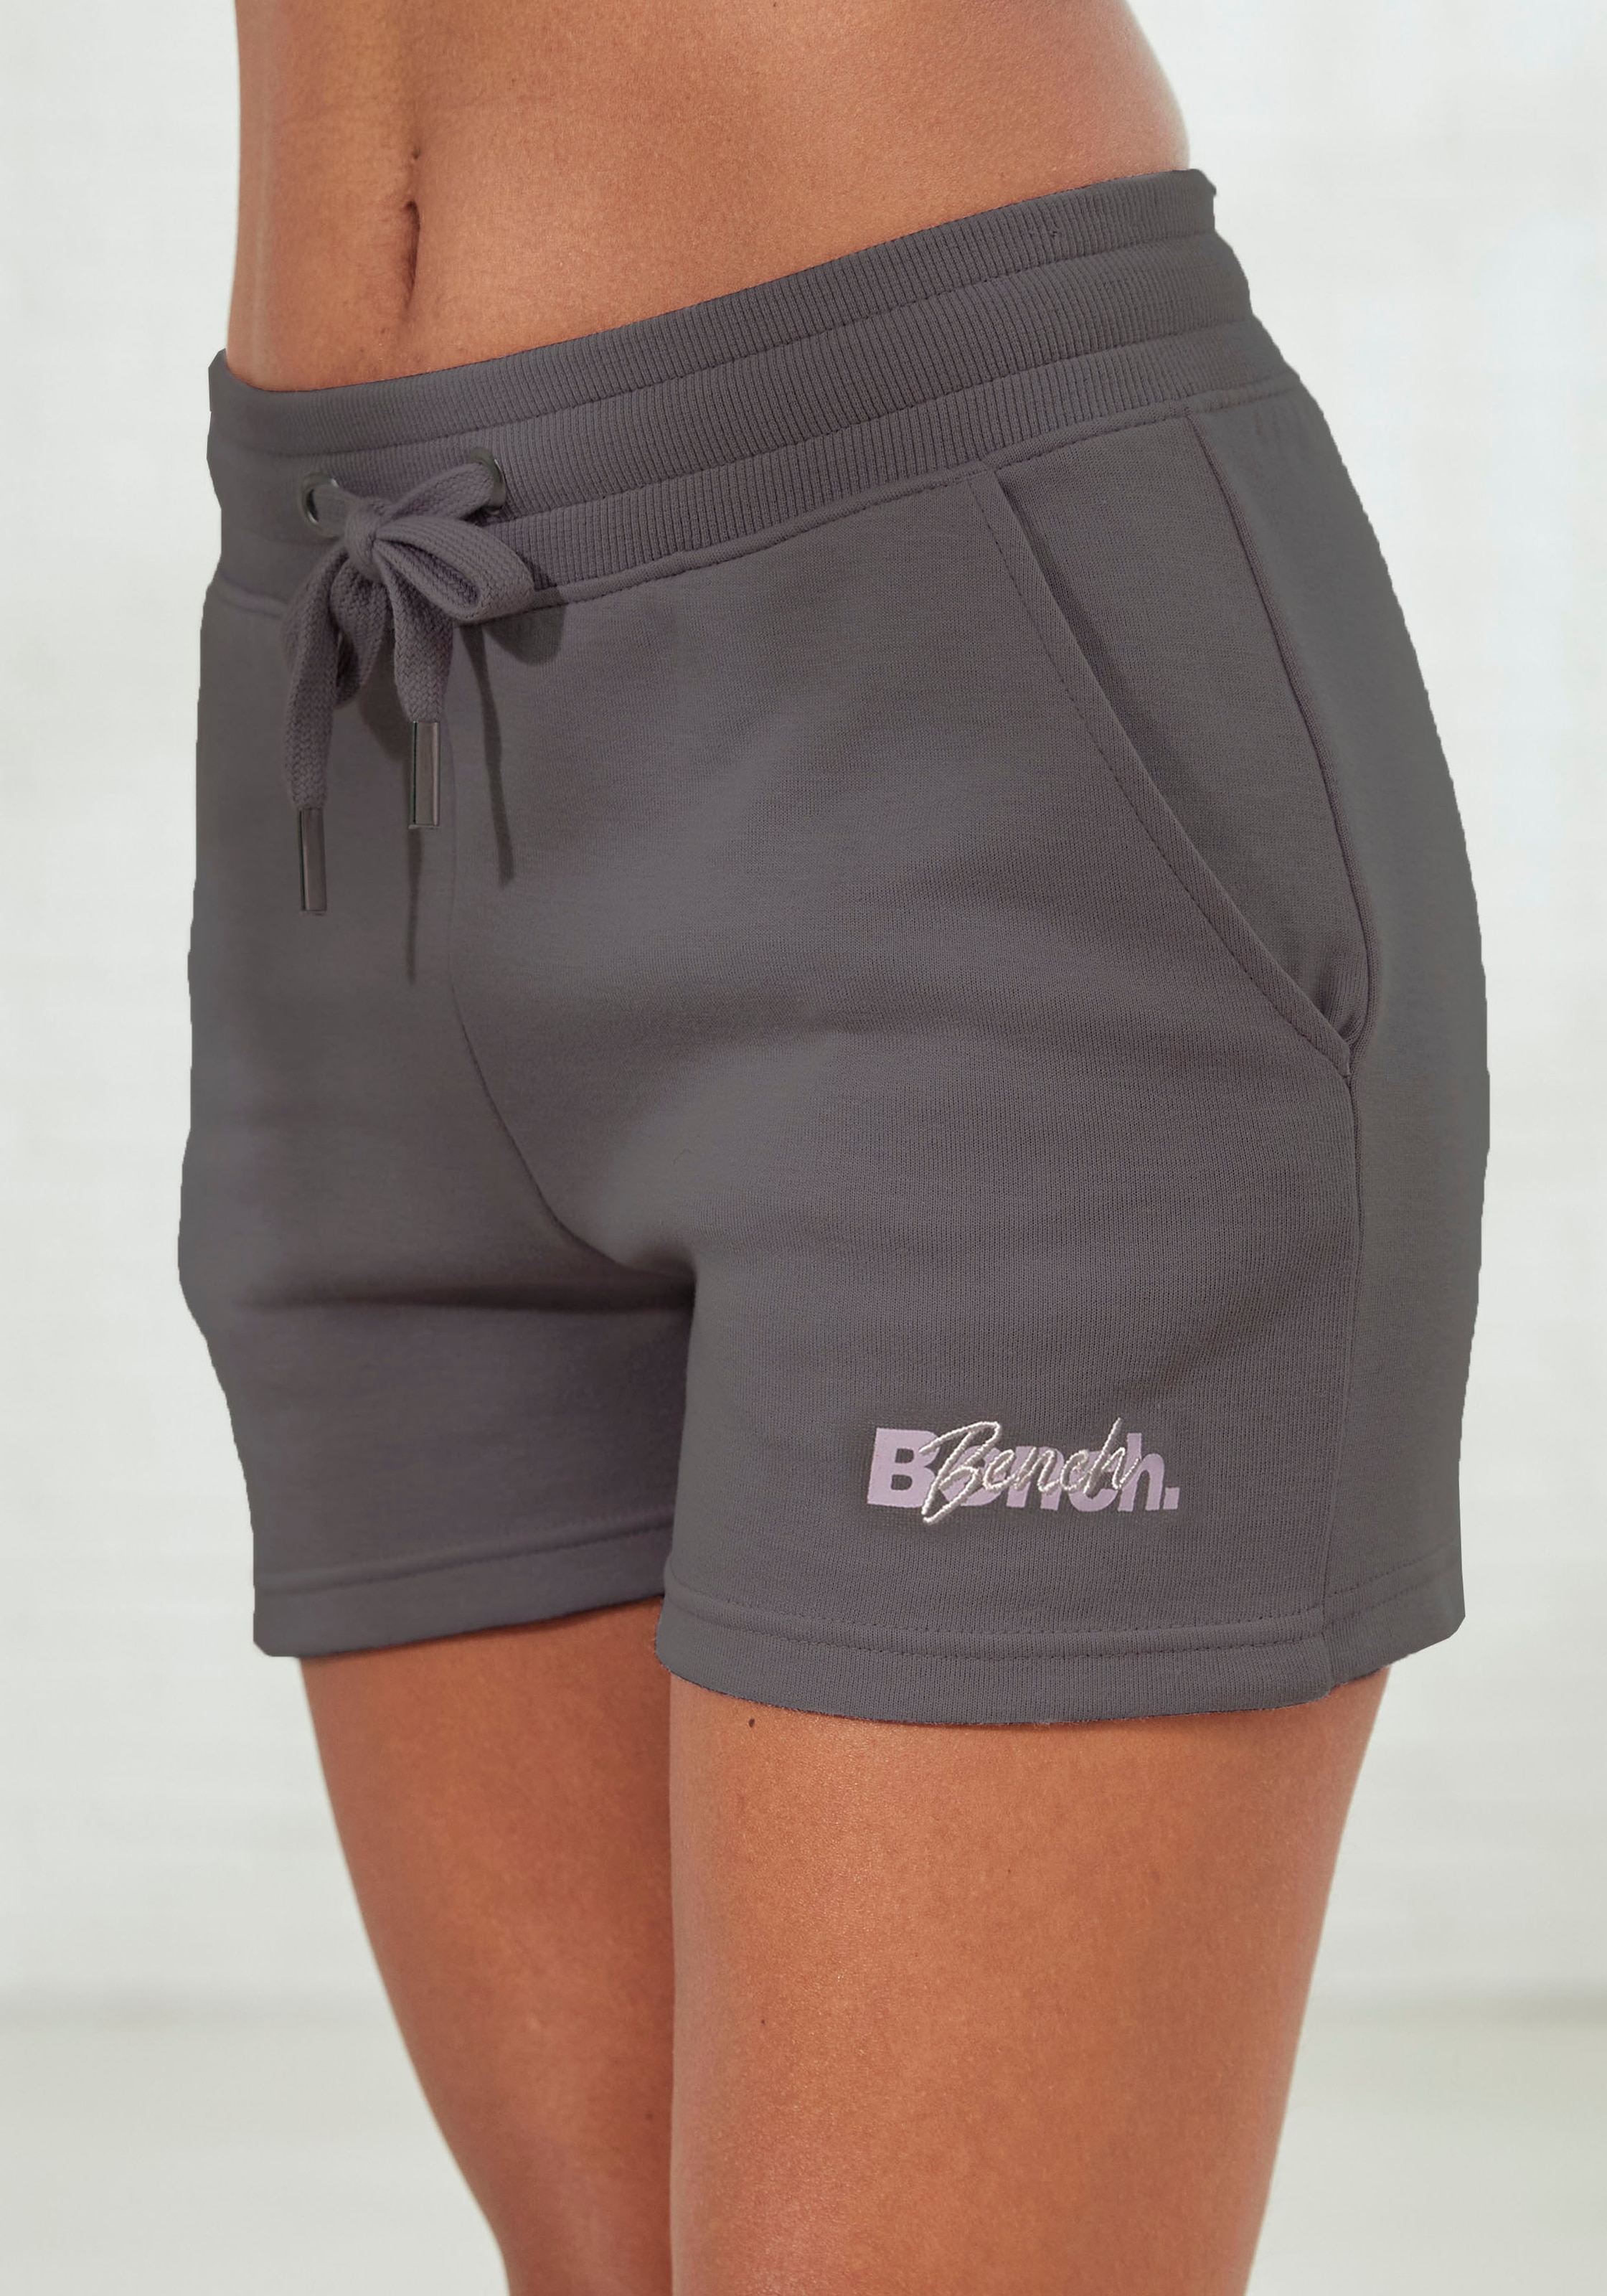 bei und online OTTO Shorts, Stickerei Bench. mit Logodruck